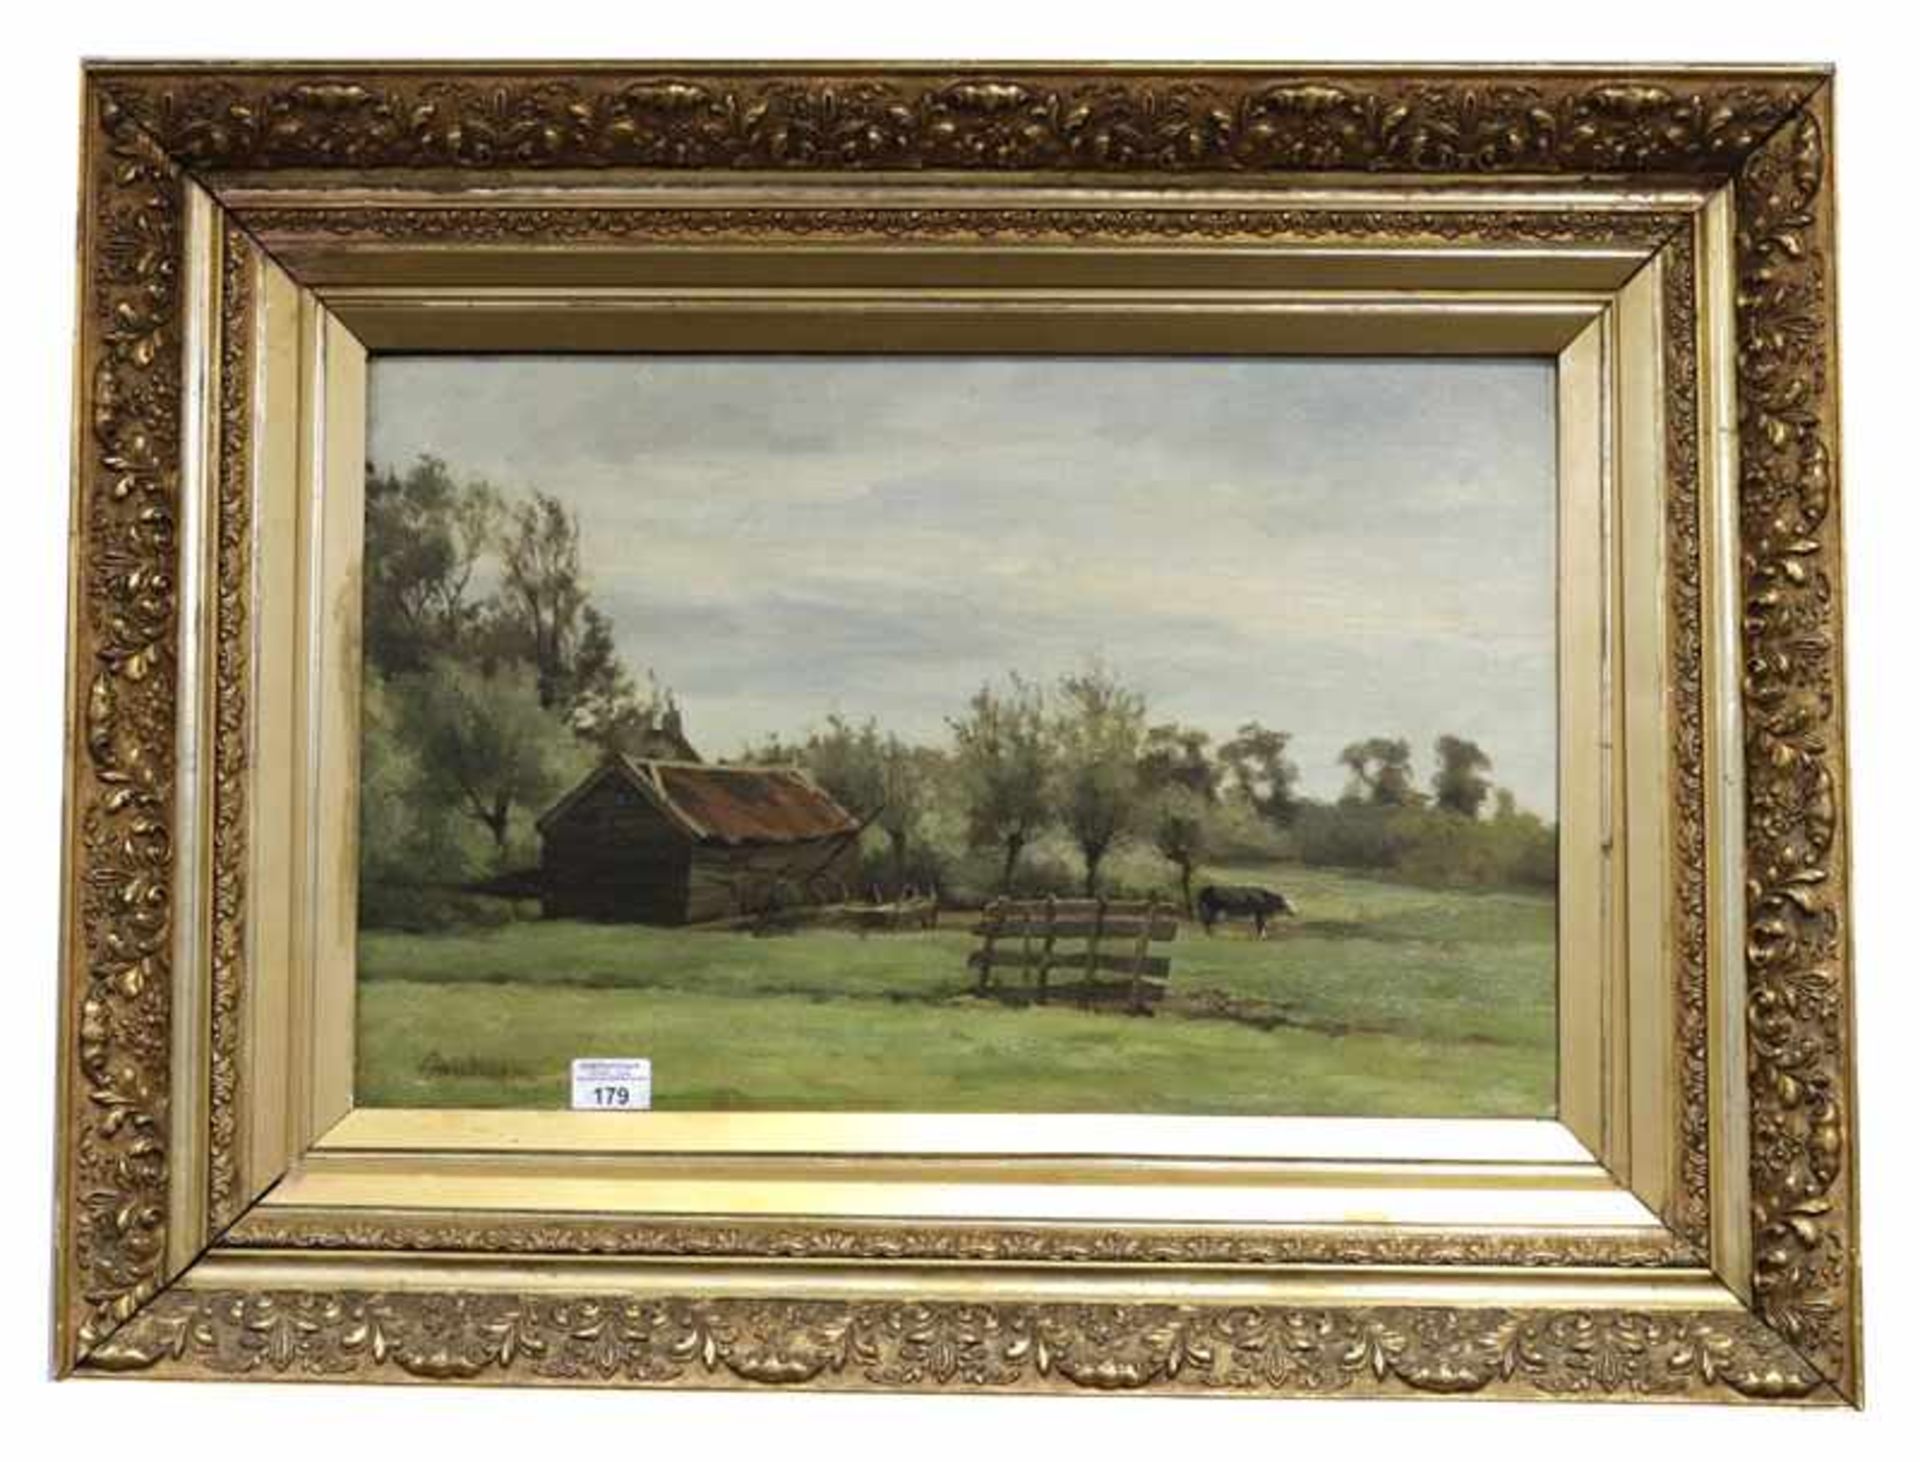 Gemälde ÖL/Holz 'Landschafts-Szenerie mit Kuh', undeutlich signiert Daubigny ?, gerahmt, Rahmen